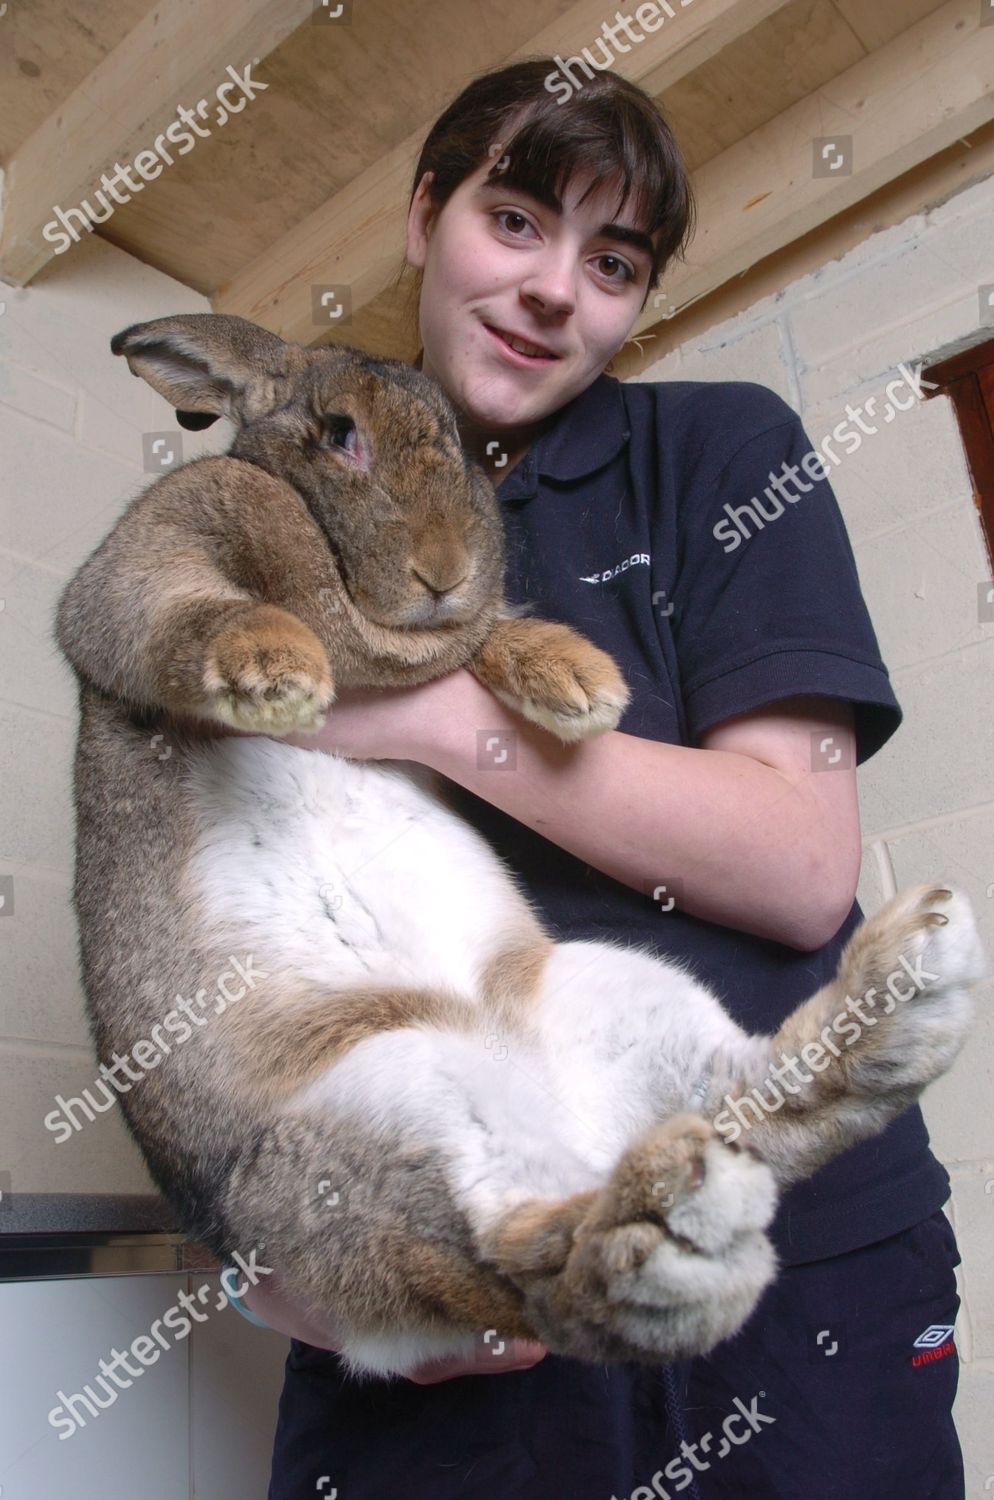 the giant rabbit